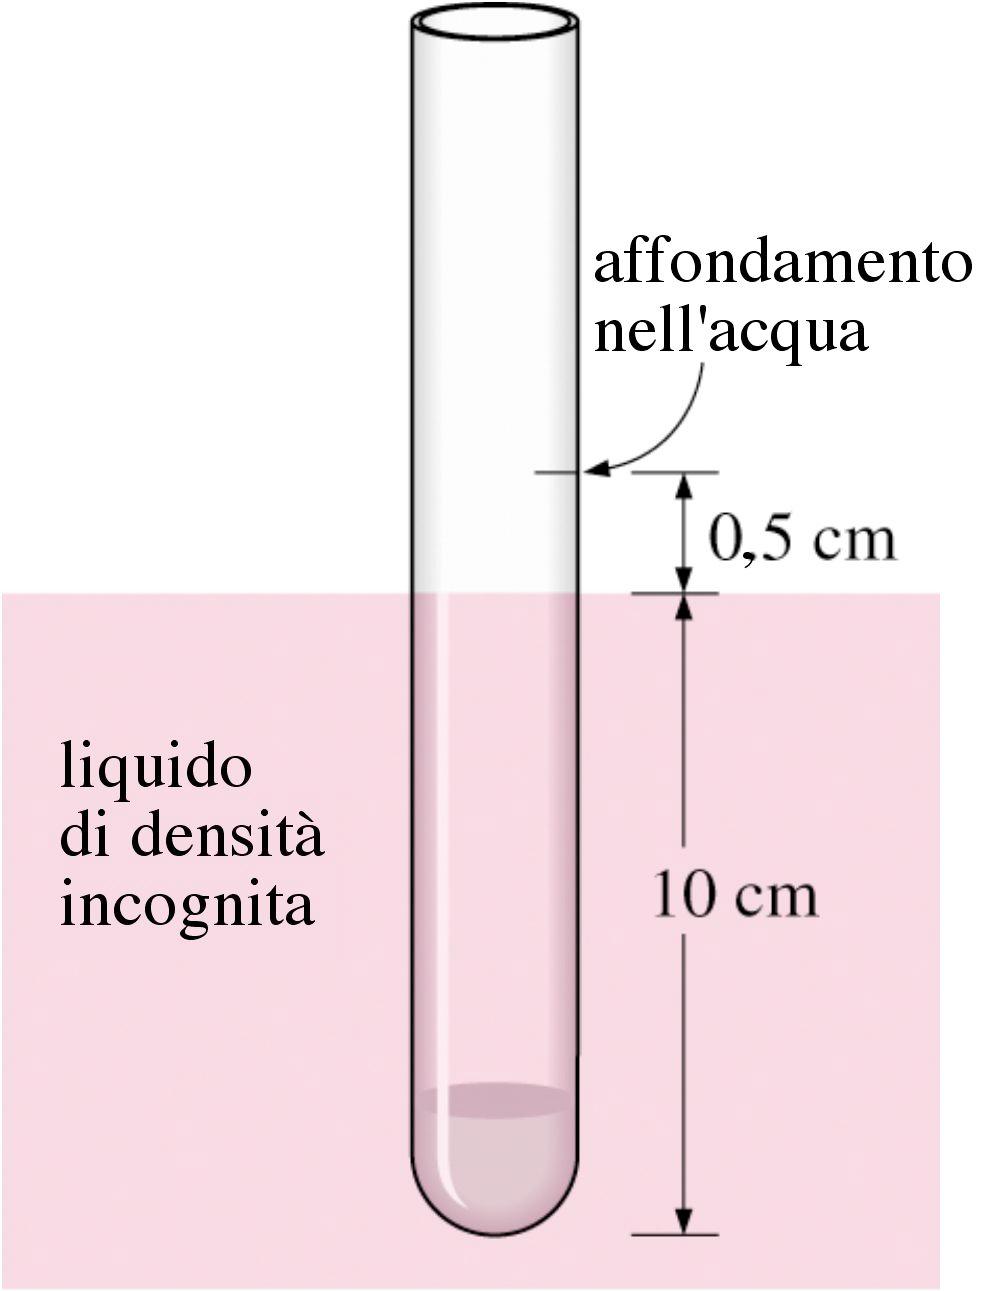 3.65 Per determinare la densità di un liquido viene usato un densimetro del diametro di 1 cm, la cui graduazione è divenuta illeggibile.